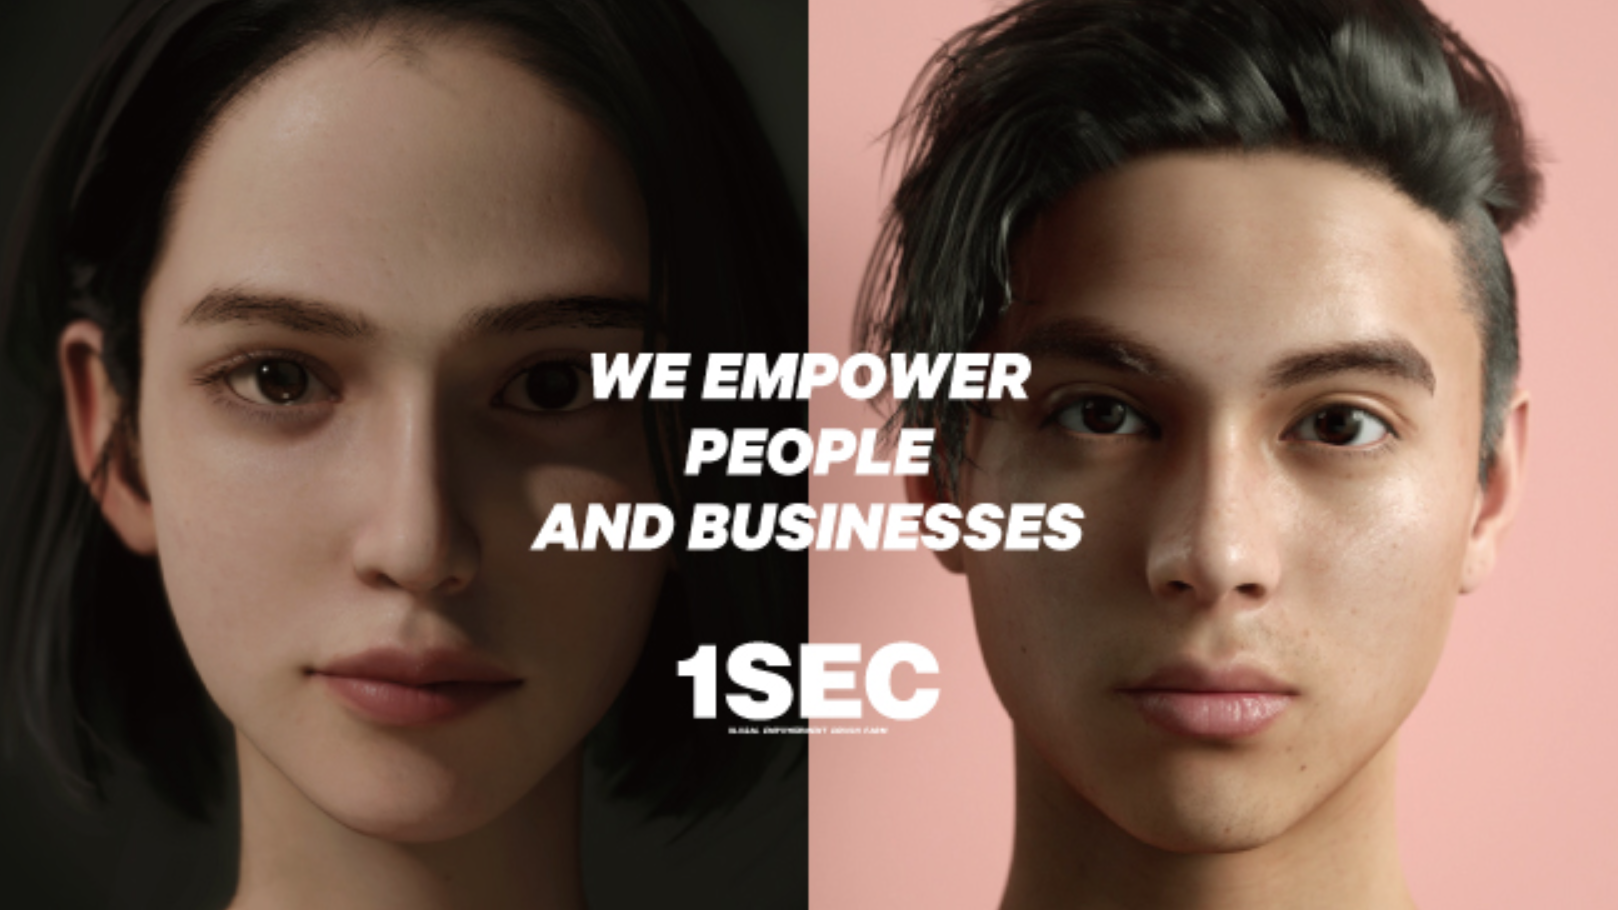 打造日本首位男性虚拟人物的创业公司 1SEC 完成1亿日元新一轮融资